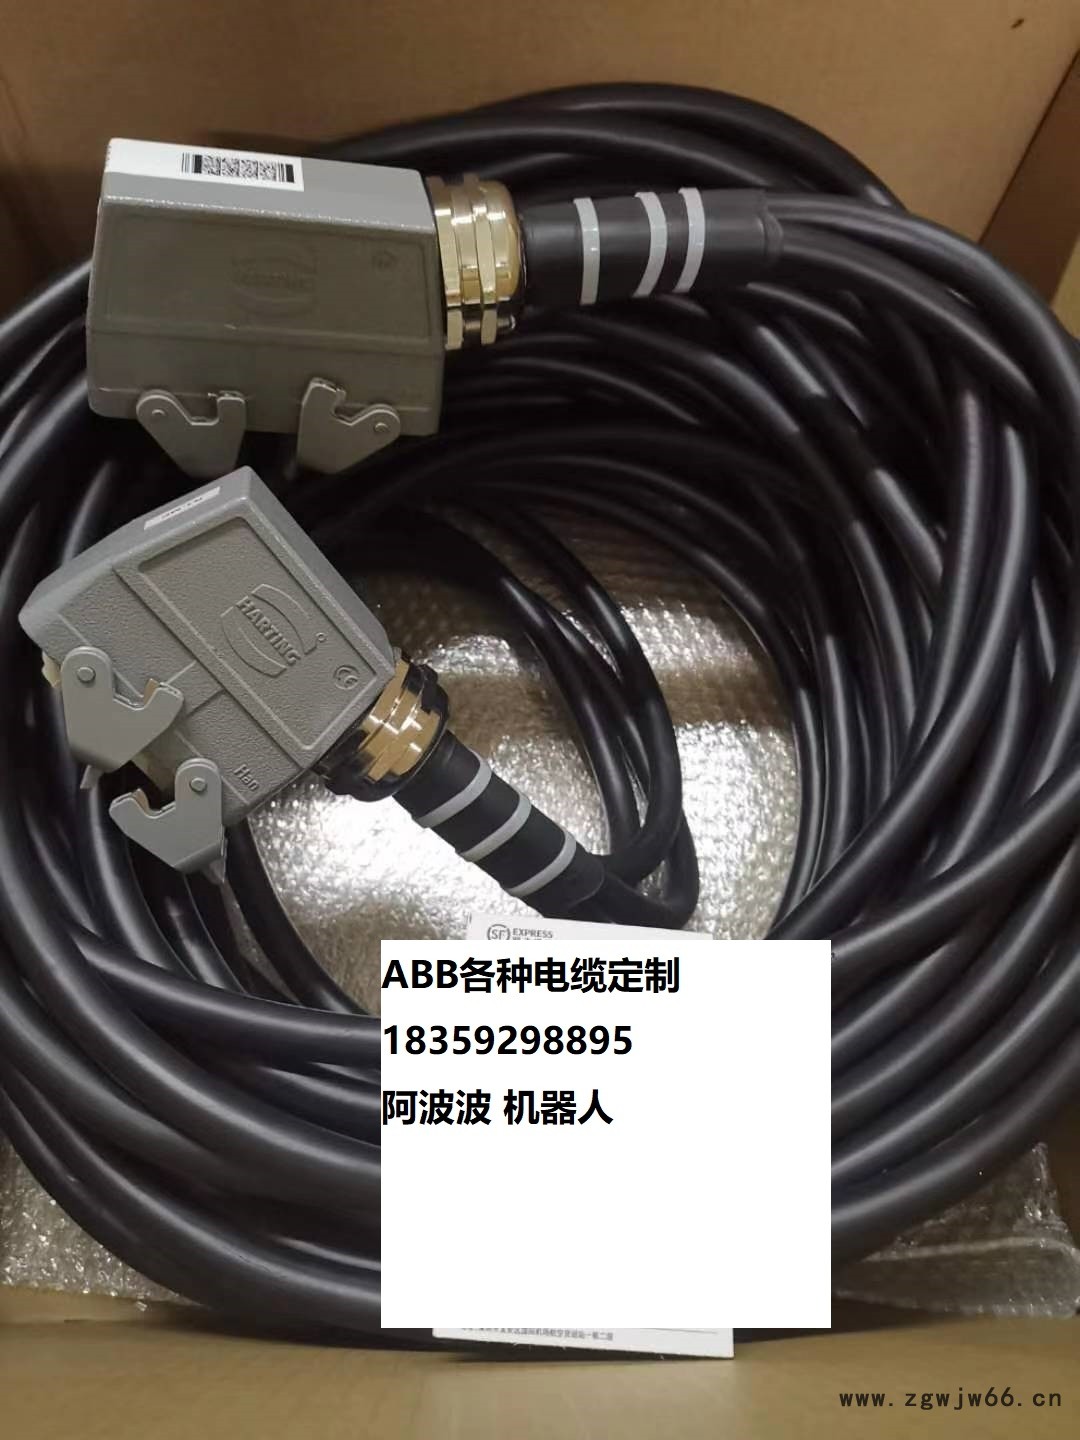 维修ABB3hac030003-1 IRB2600本体电缆